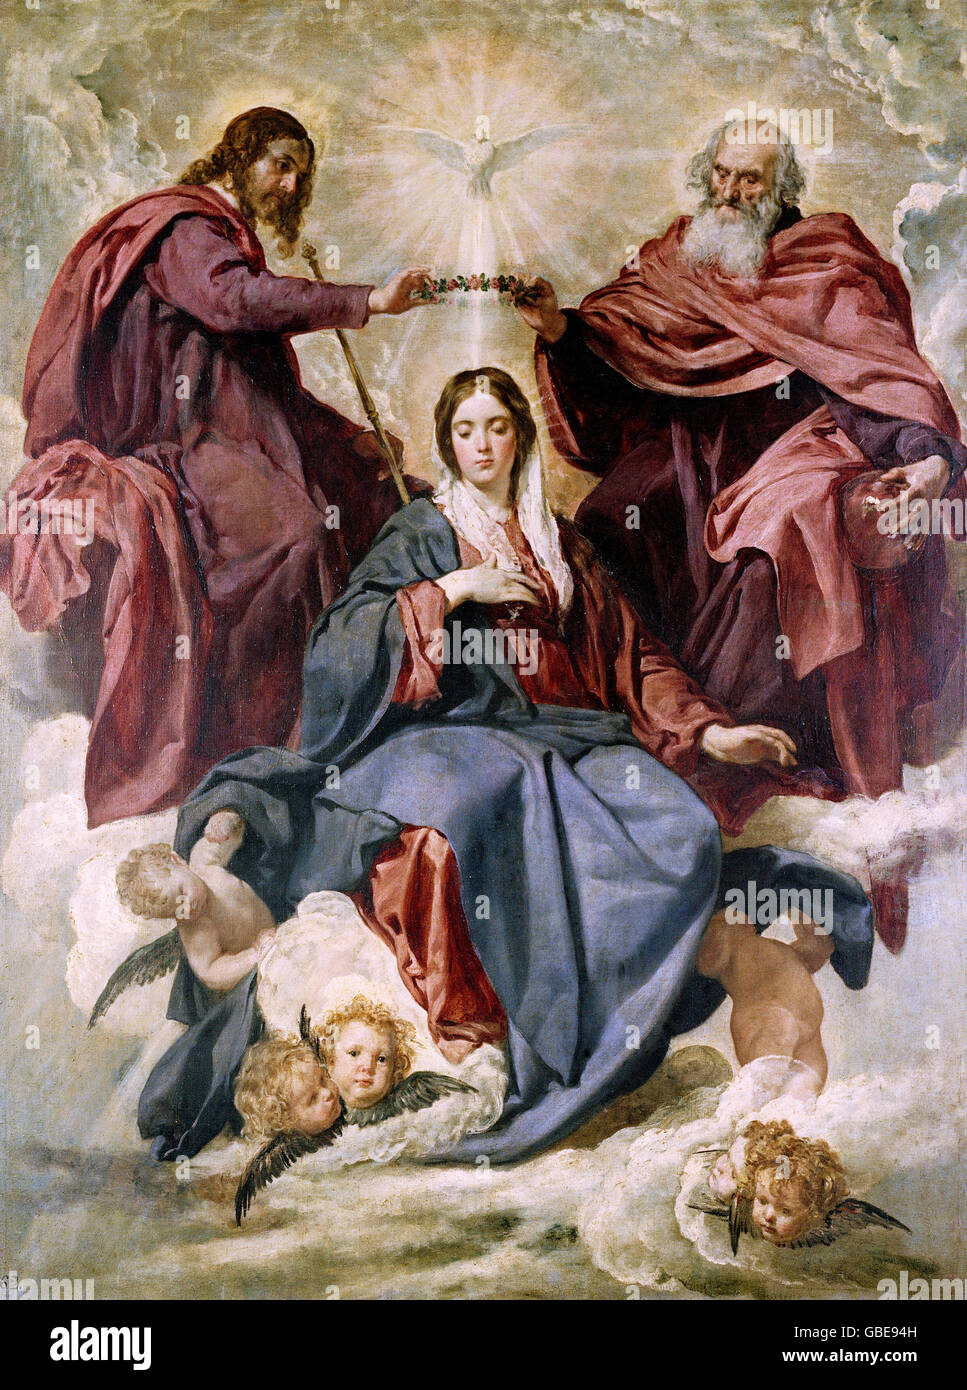 Résultat de recherche d'images pour "Peintures religieuses de Velazquez"